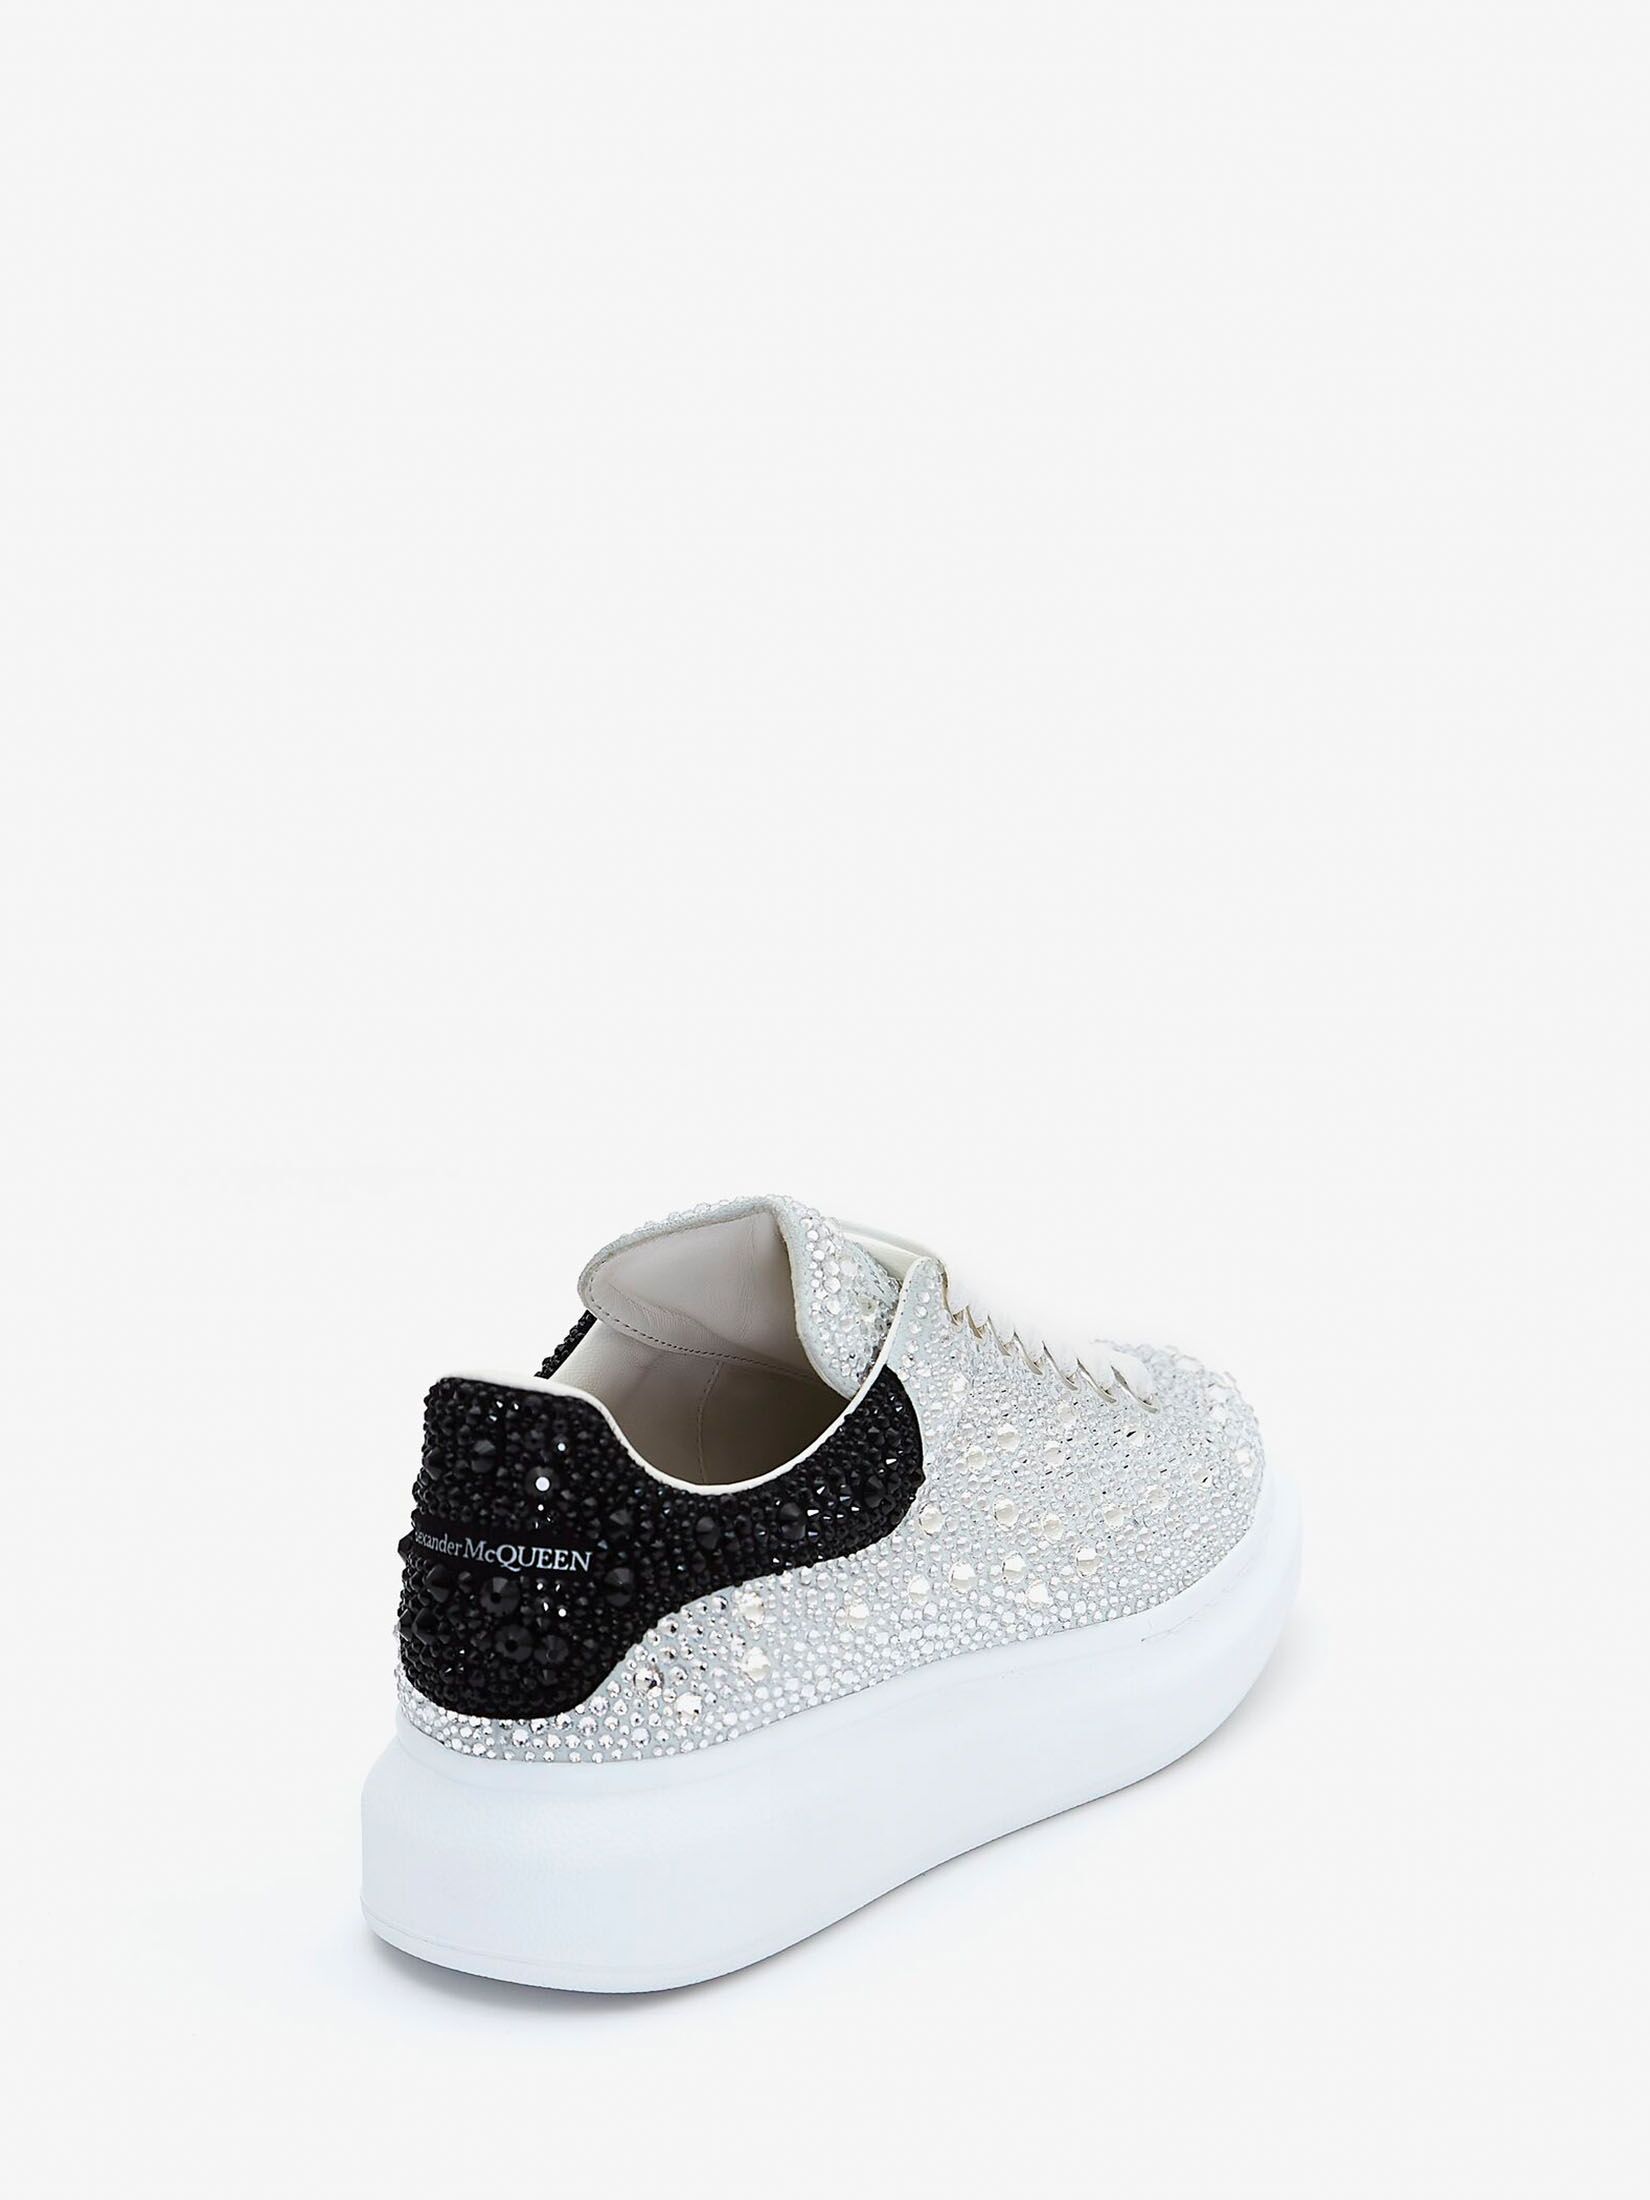 Crystal-embellished Oversized Sneaker in White/Black | Alexander 